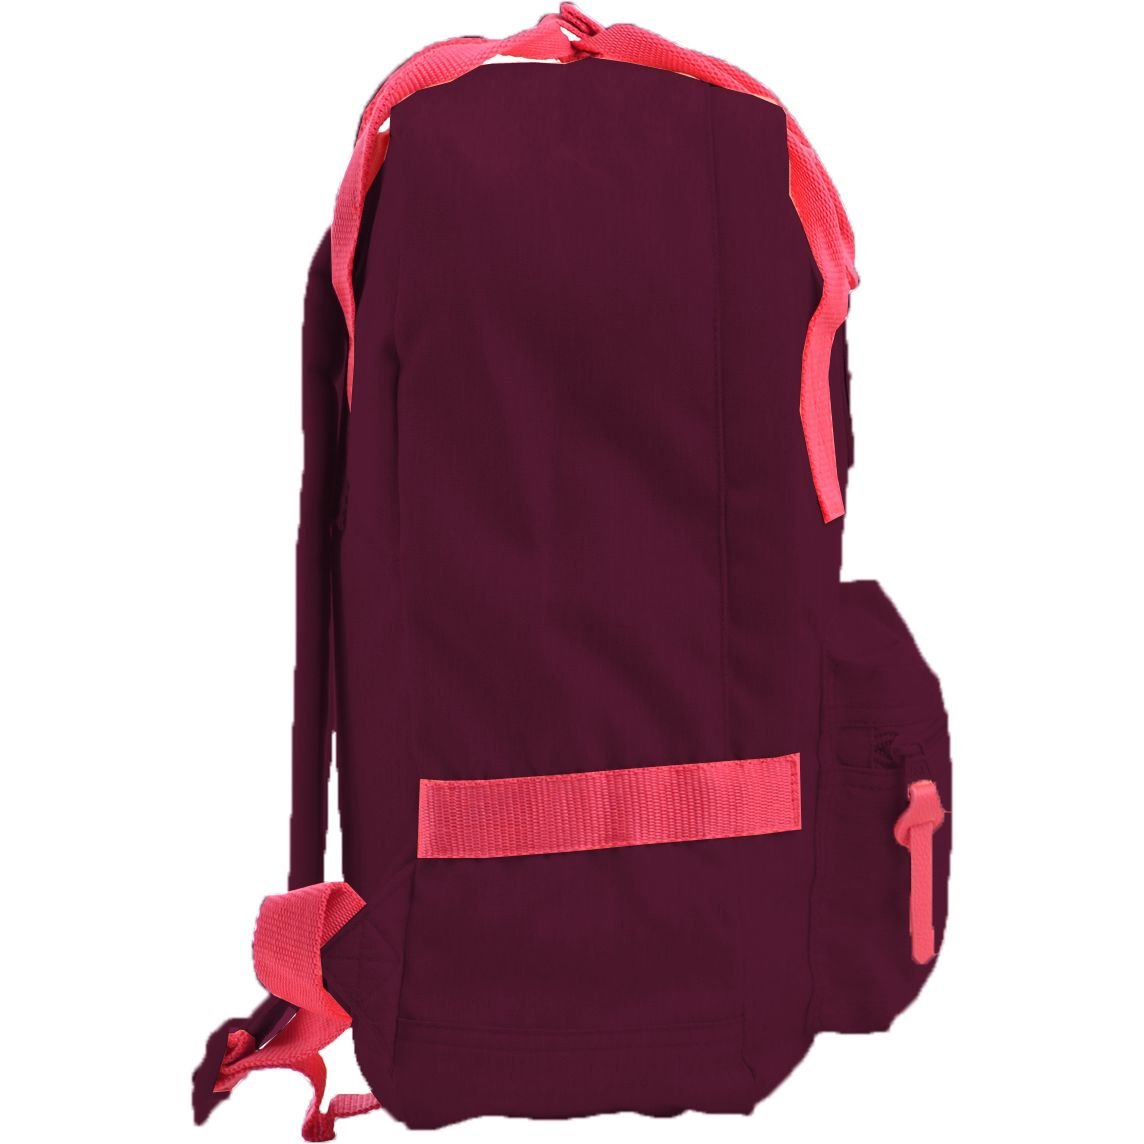 Рюкзак для підлітків Yes ST-24 Tawny Port, бордовый (555585) - фото 3